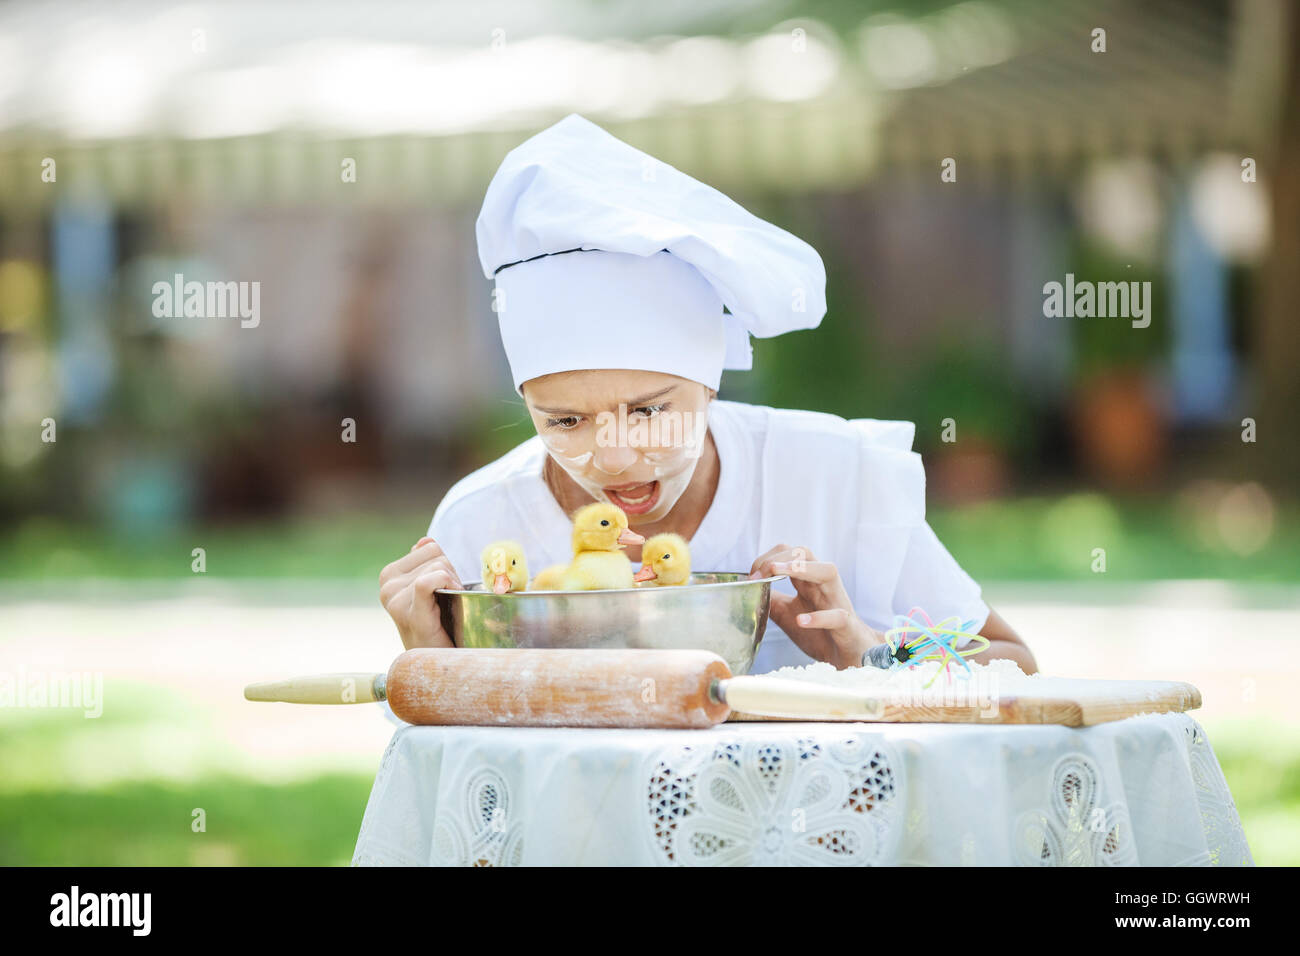 Scioccato little chef che mostra le ochette in un recipiente durante la cottura all'aperto Foto Stock